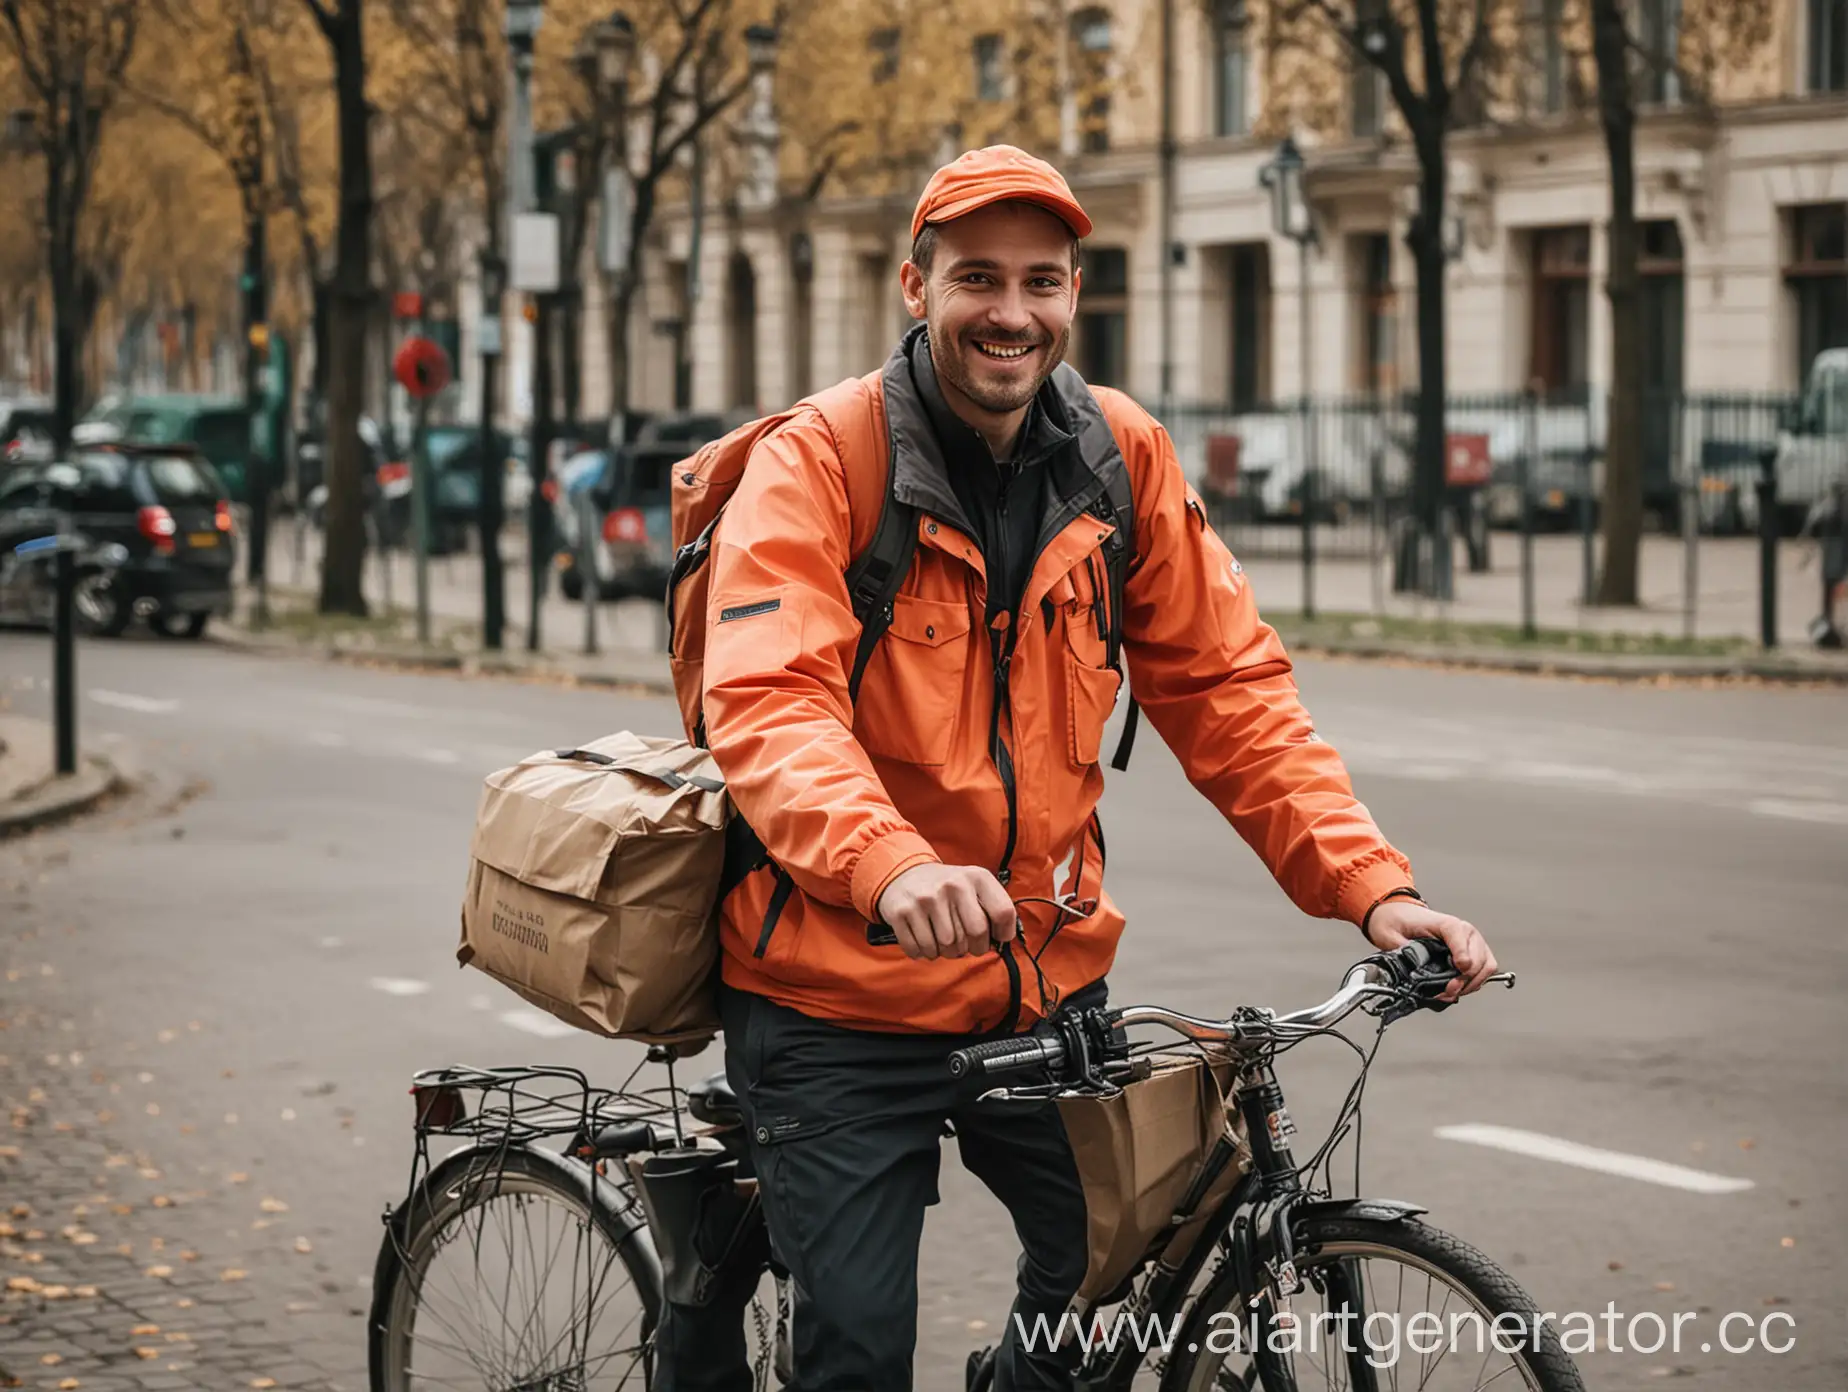 Сделай картинки курьера на велосипеде, который едет по дневной Москве в районе Патриарших прудов. Он улыбается и счастлив, что работает курьером. Одежда курьера должна быть обычной без логотипов.